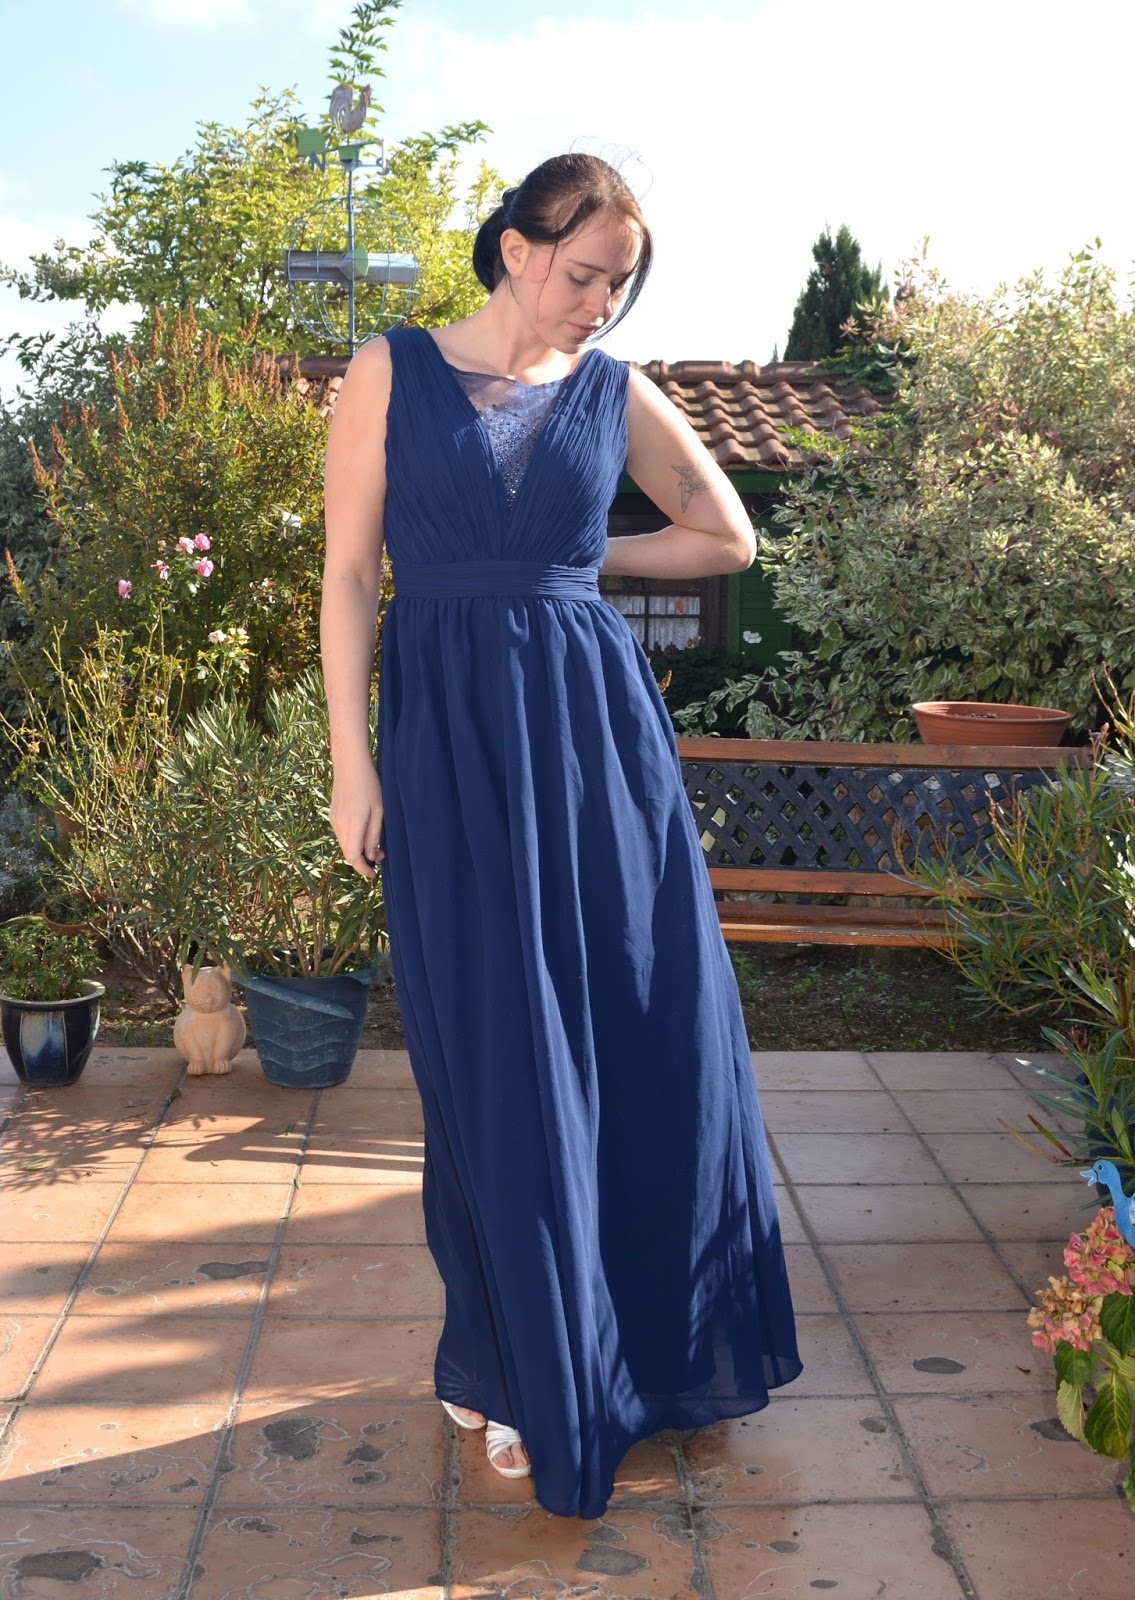 15 Großartig Blaues Kleid Für Hochzeit VertriebFormal Cool Blaues Kleid Für Hochzeit Stylish